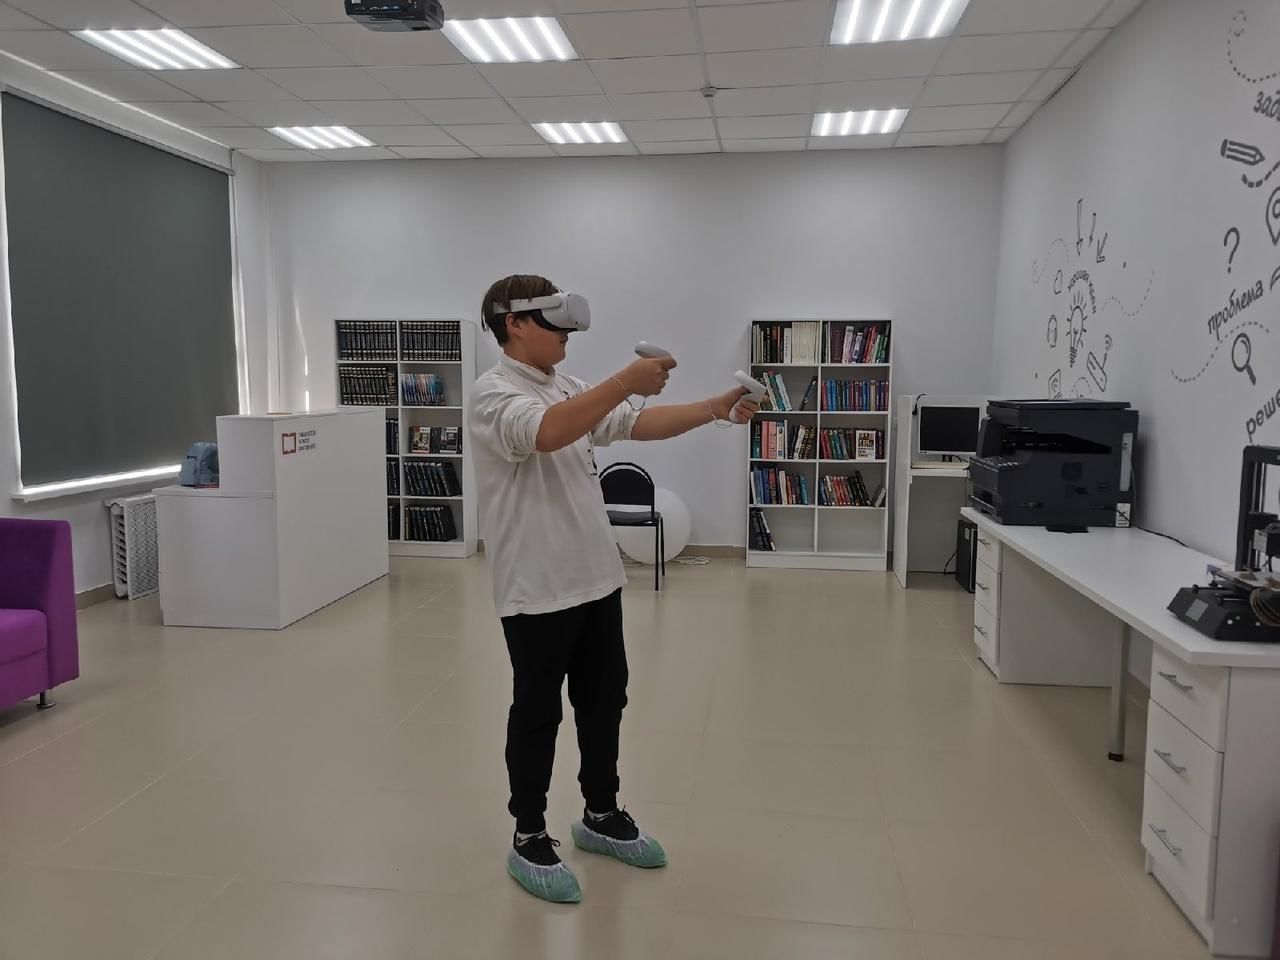 Vr класс. Выездные мероприятия VR. VR программы. Class VR. Учебный класс в VR формате.